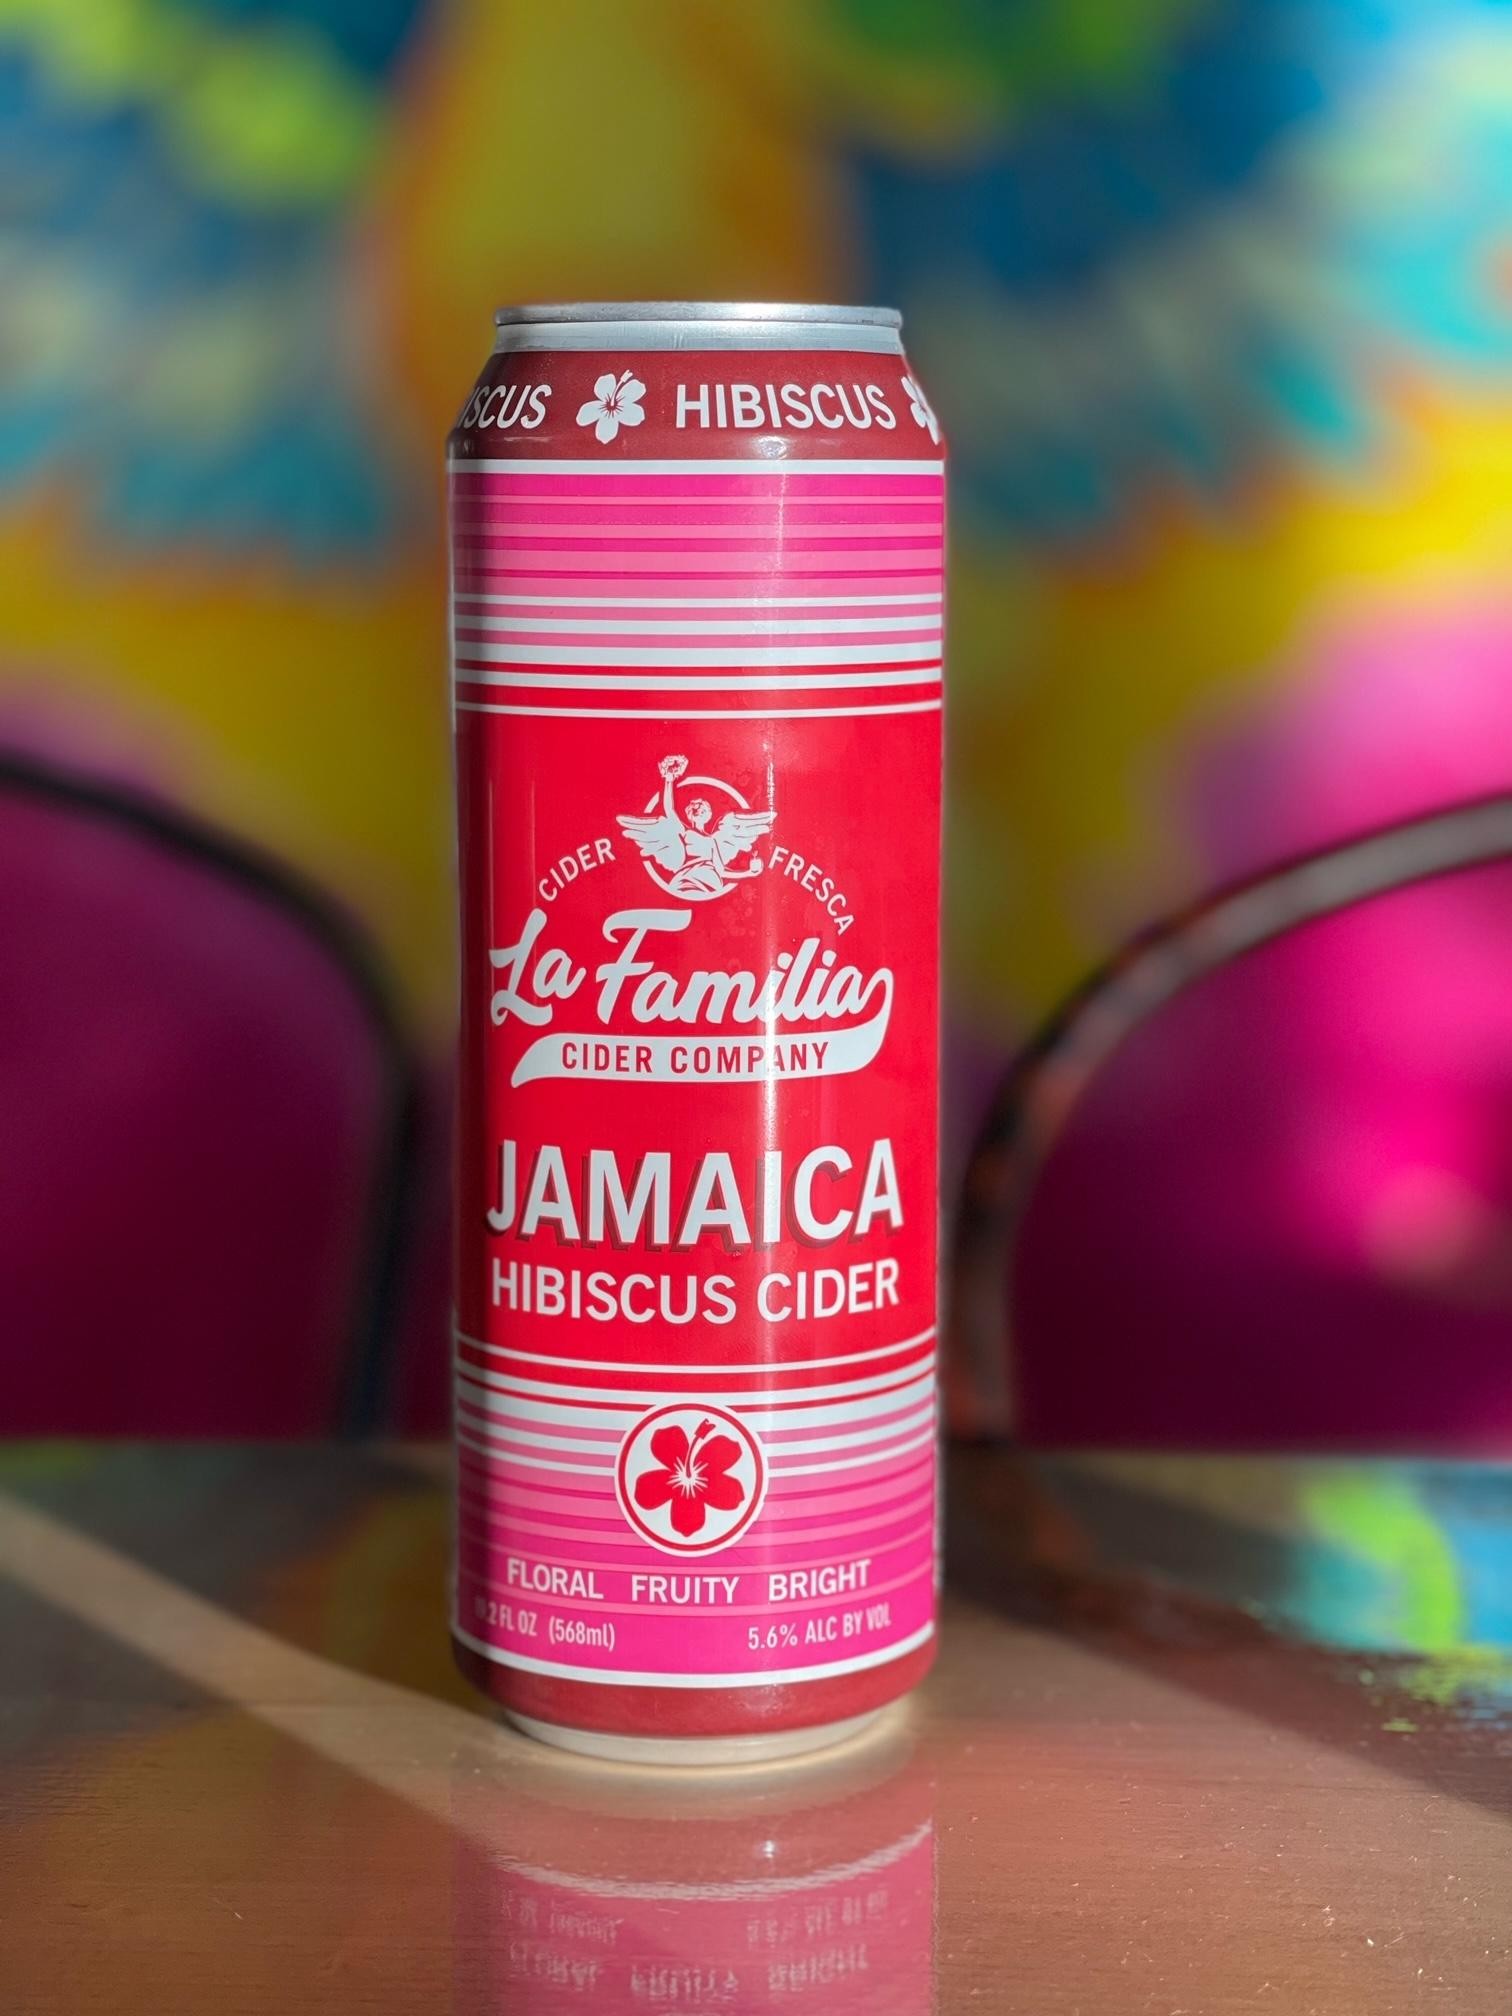 La Famalia Cider: Jamaica